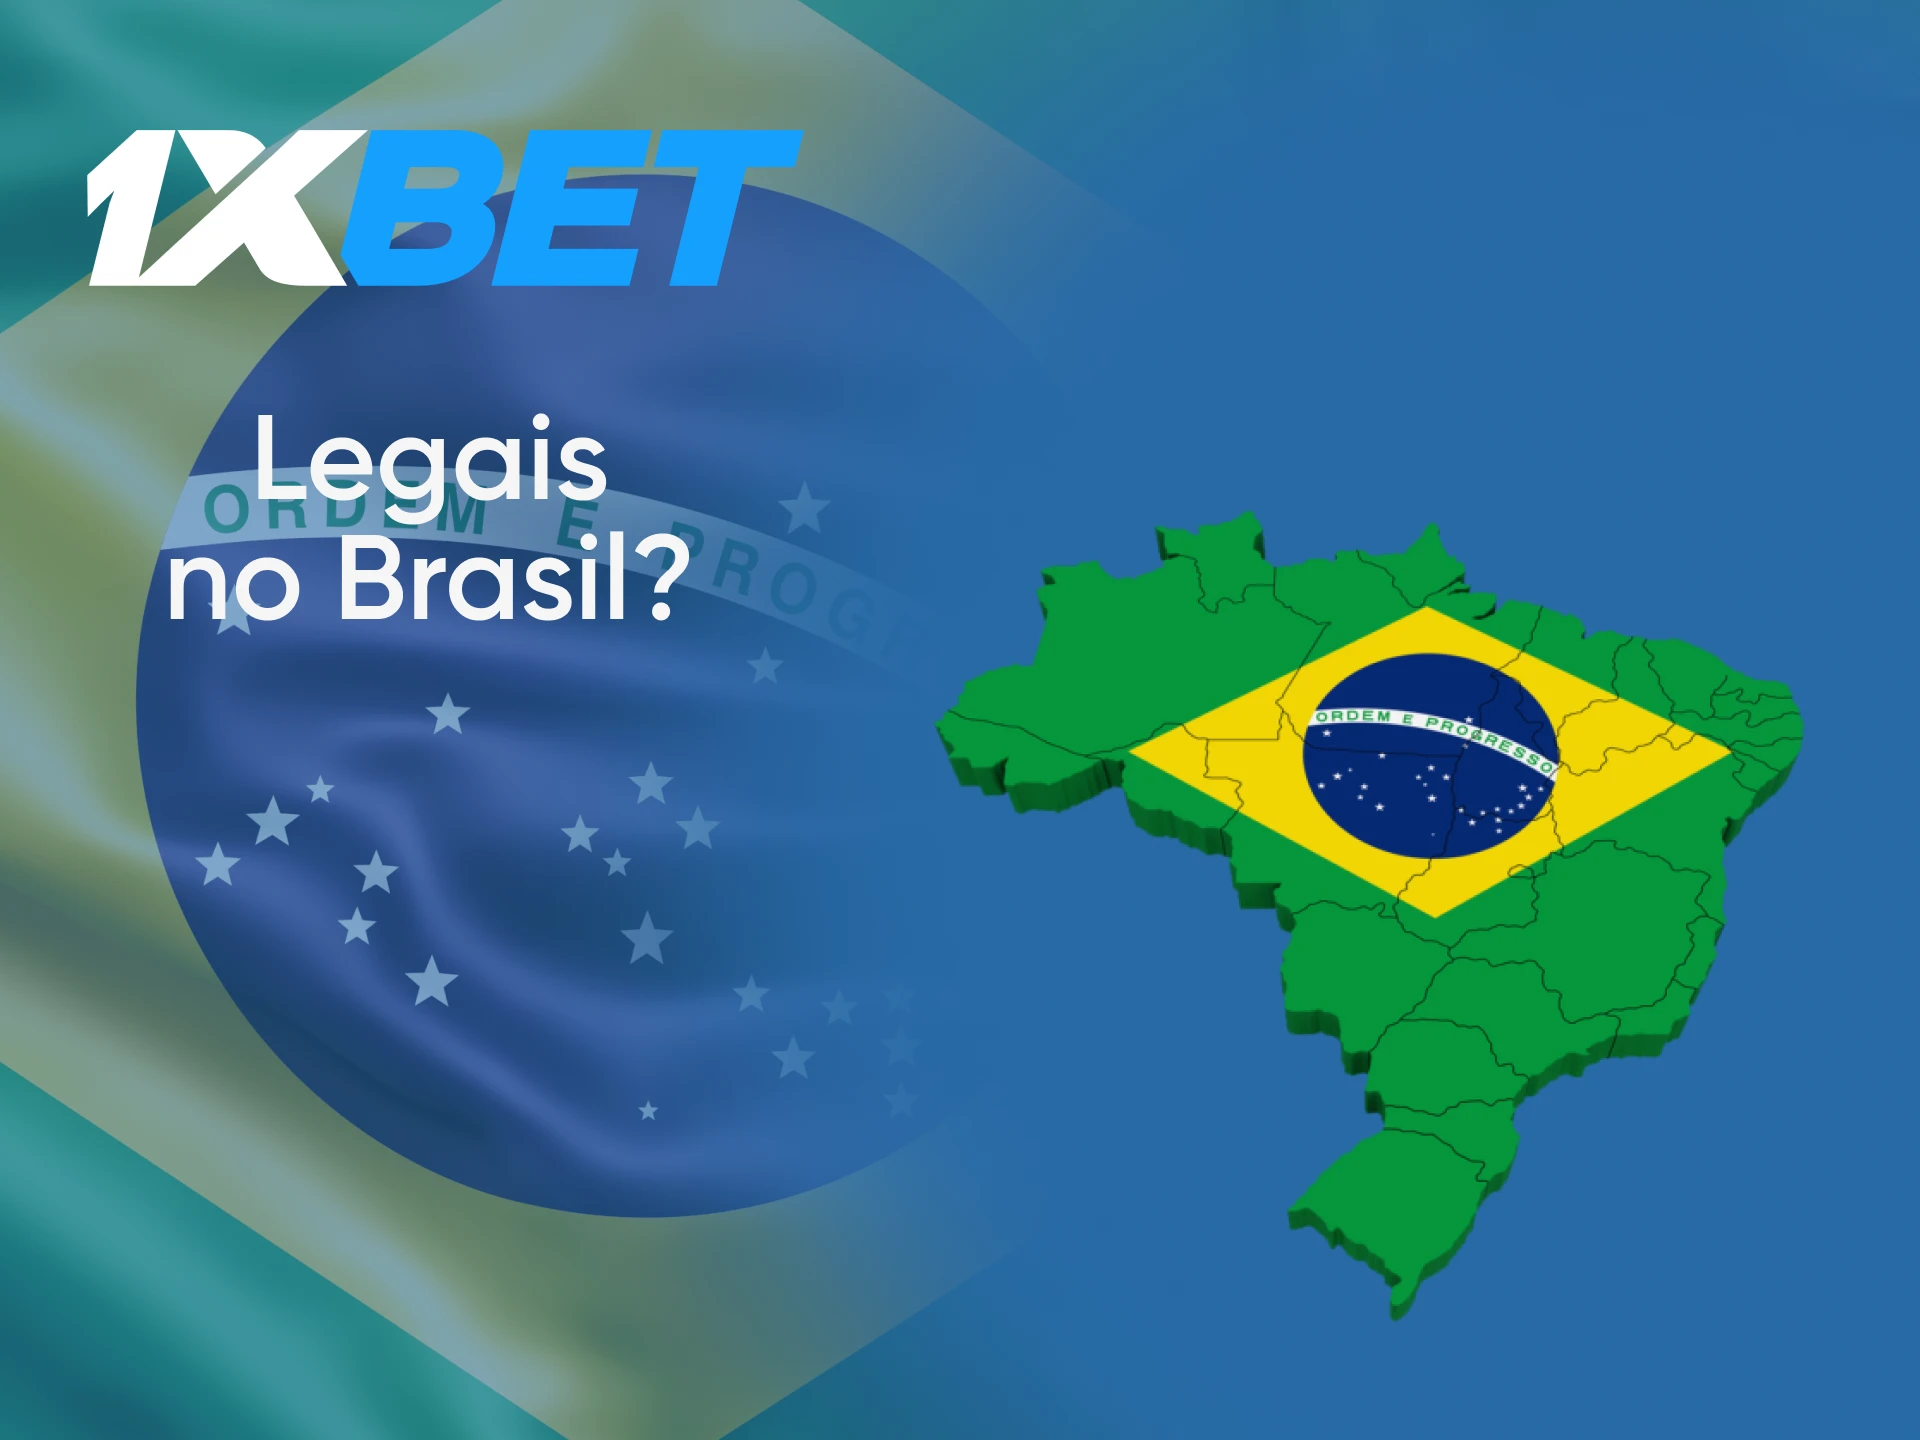 Para usuários do Brasil, o site 1xbet para apostas no Valorant é legal.